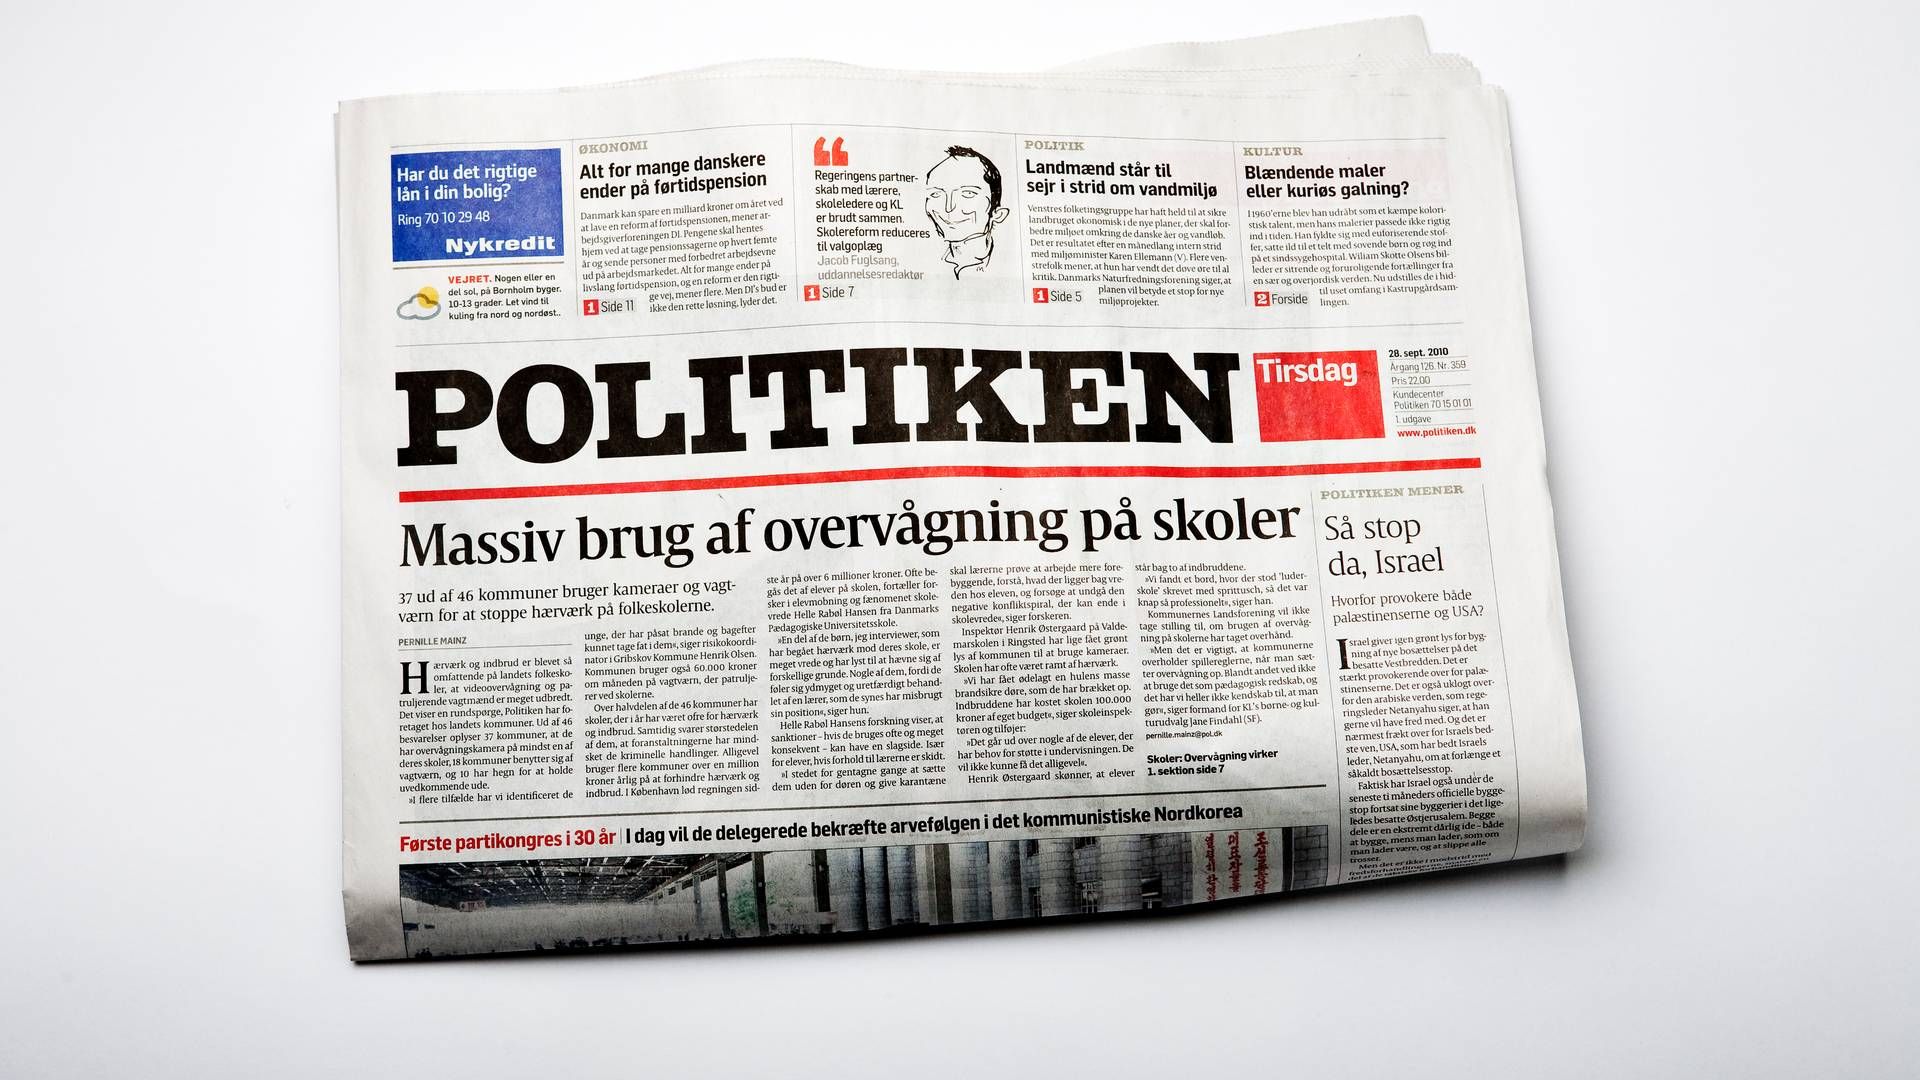 Hvorvidt det også indføres andre prisændringer på andre abonnementer på Politiken, fremgår ikke. | Foto: Rune Pedersen/Jyllands-Posten/Ritzau Scanpix